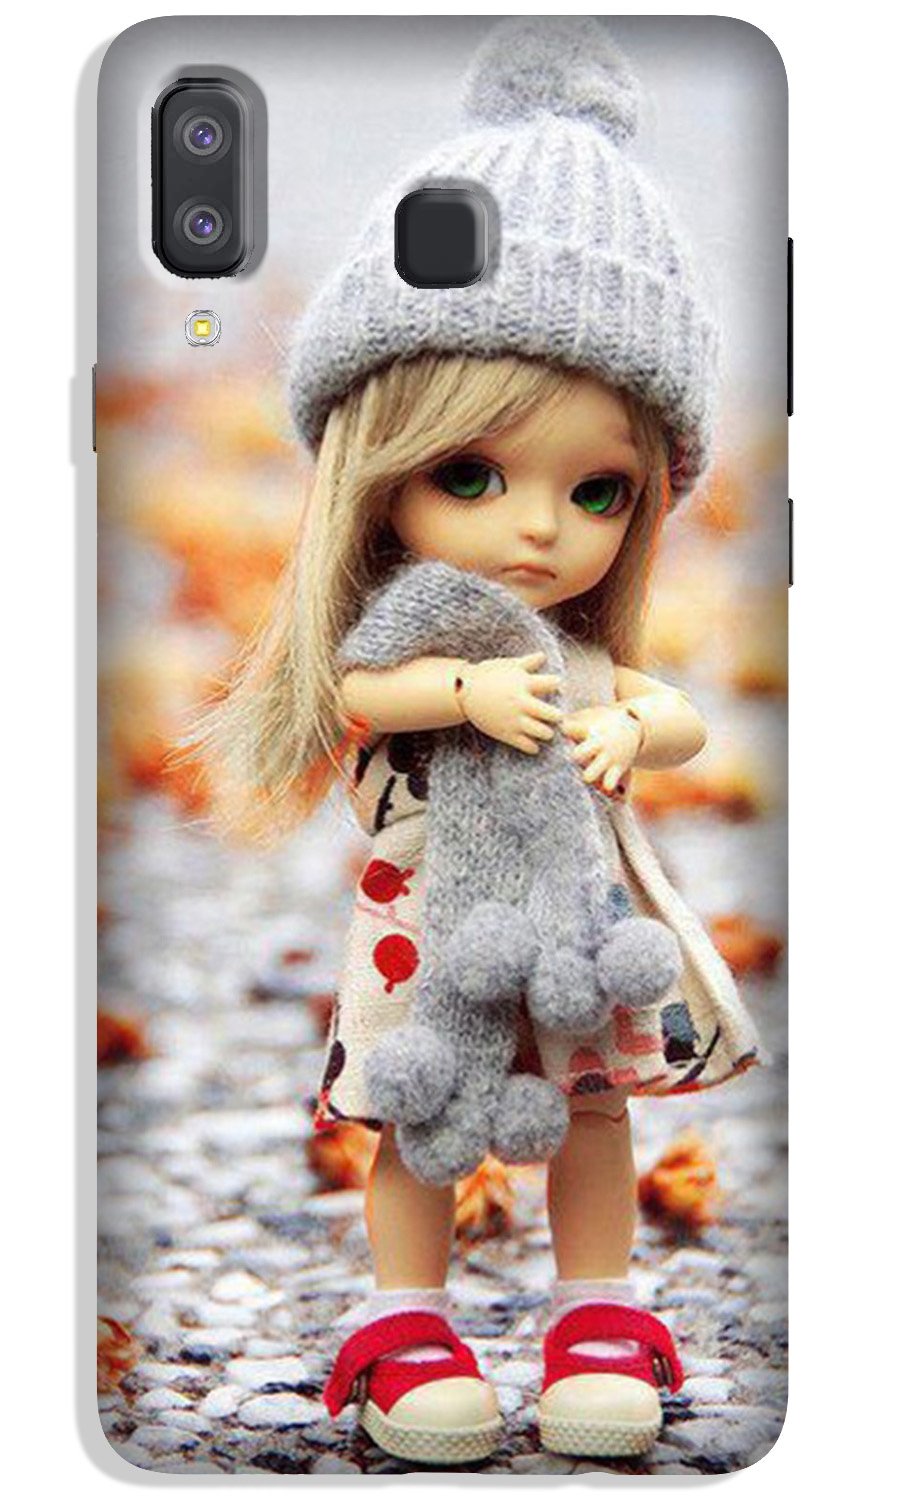 Cute Doll Case for Galaxy A8 Star